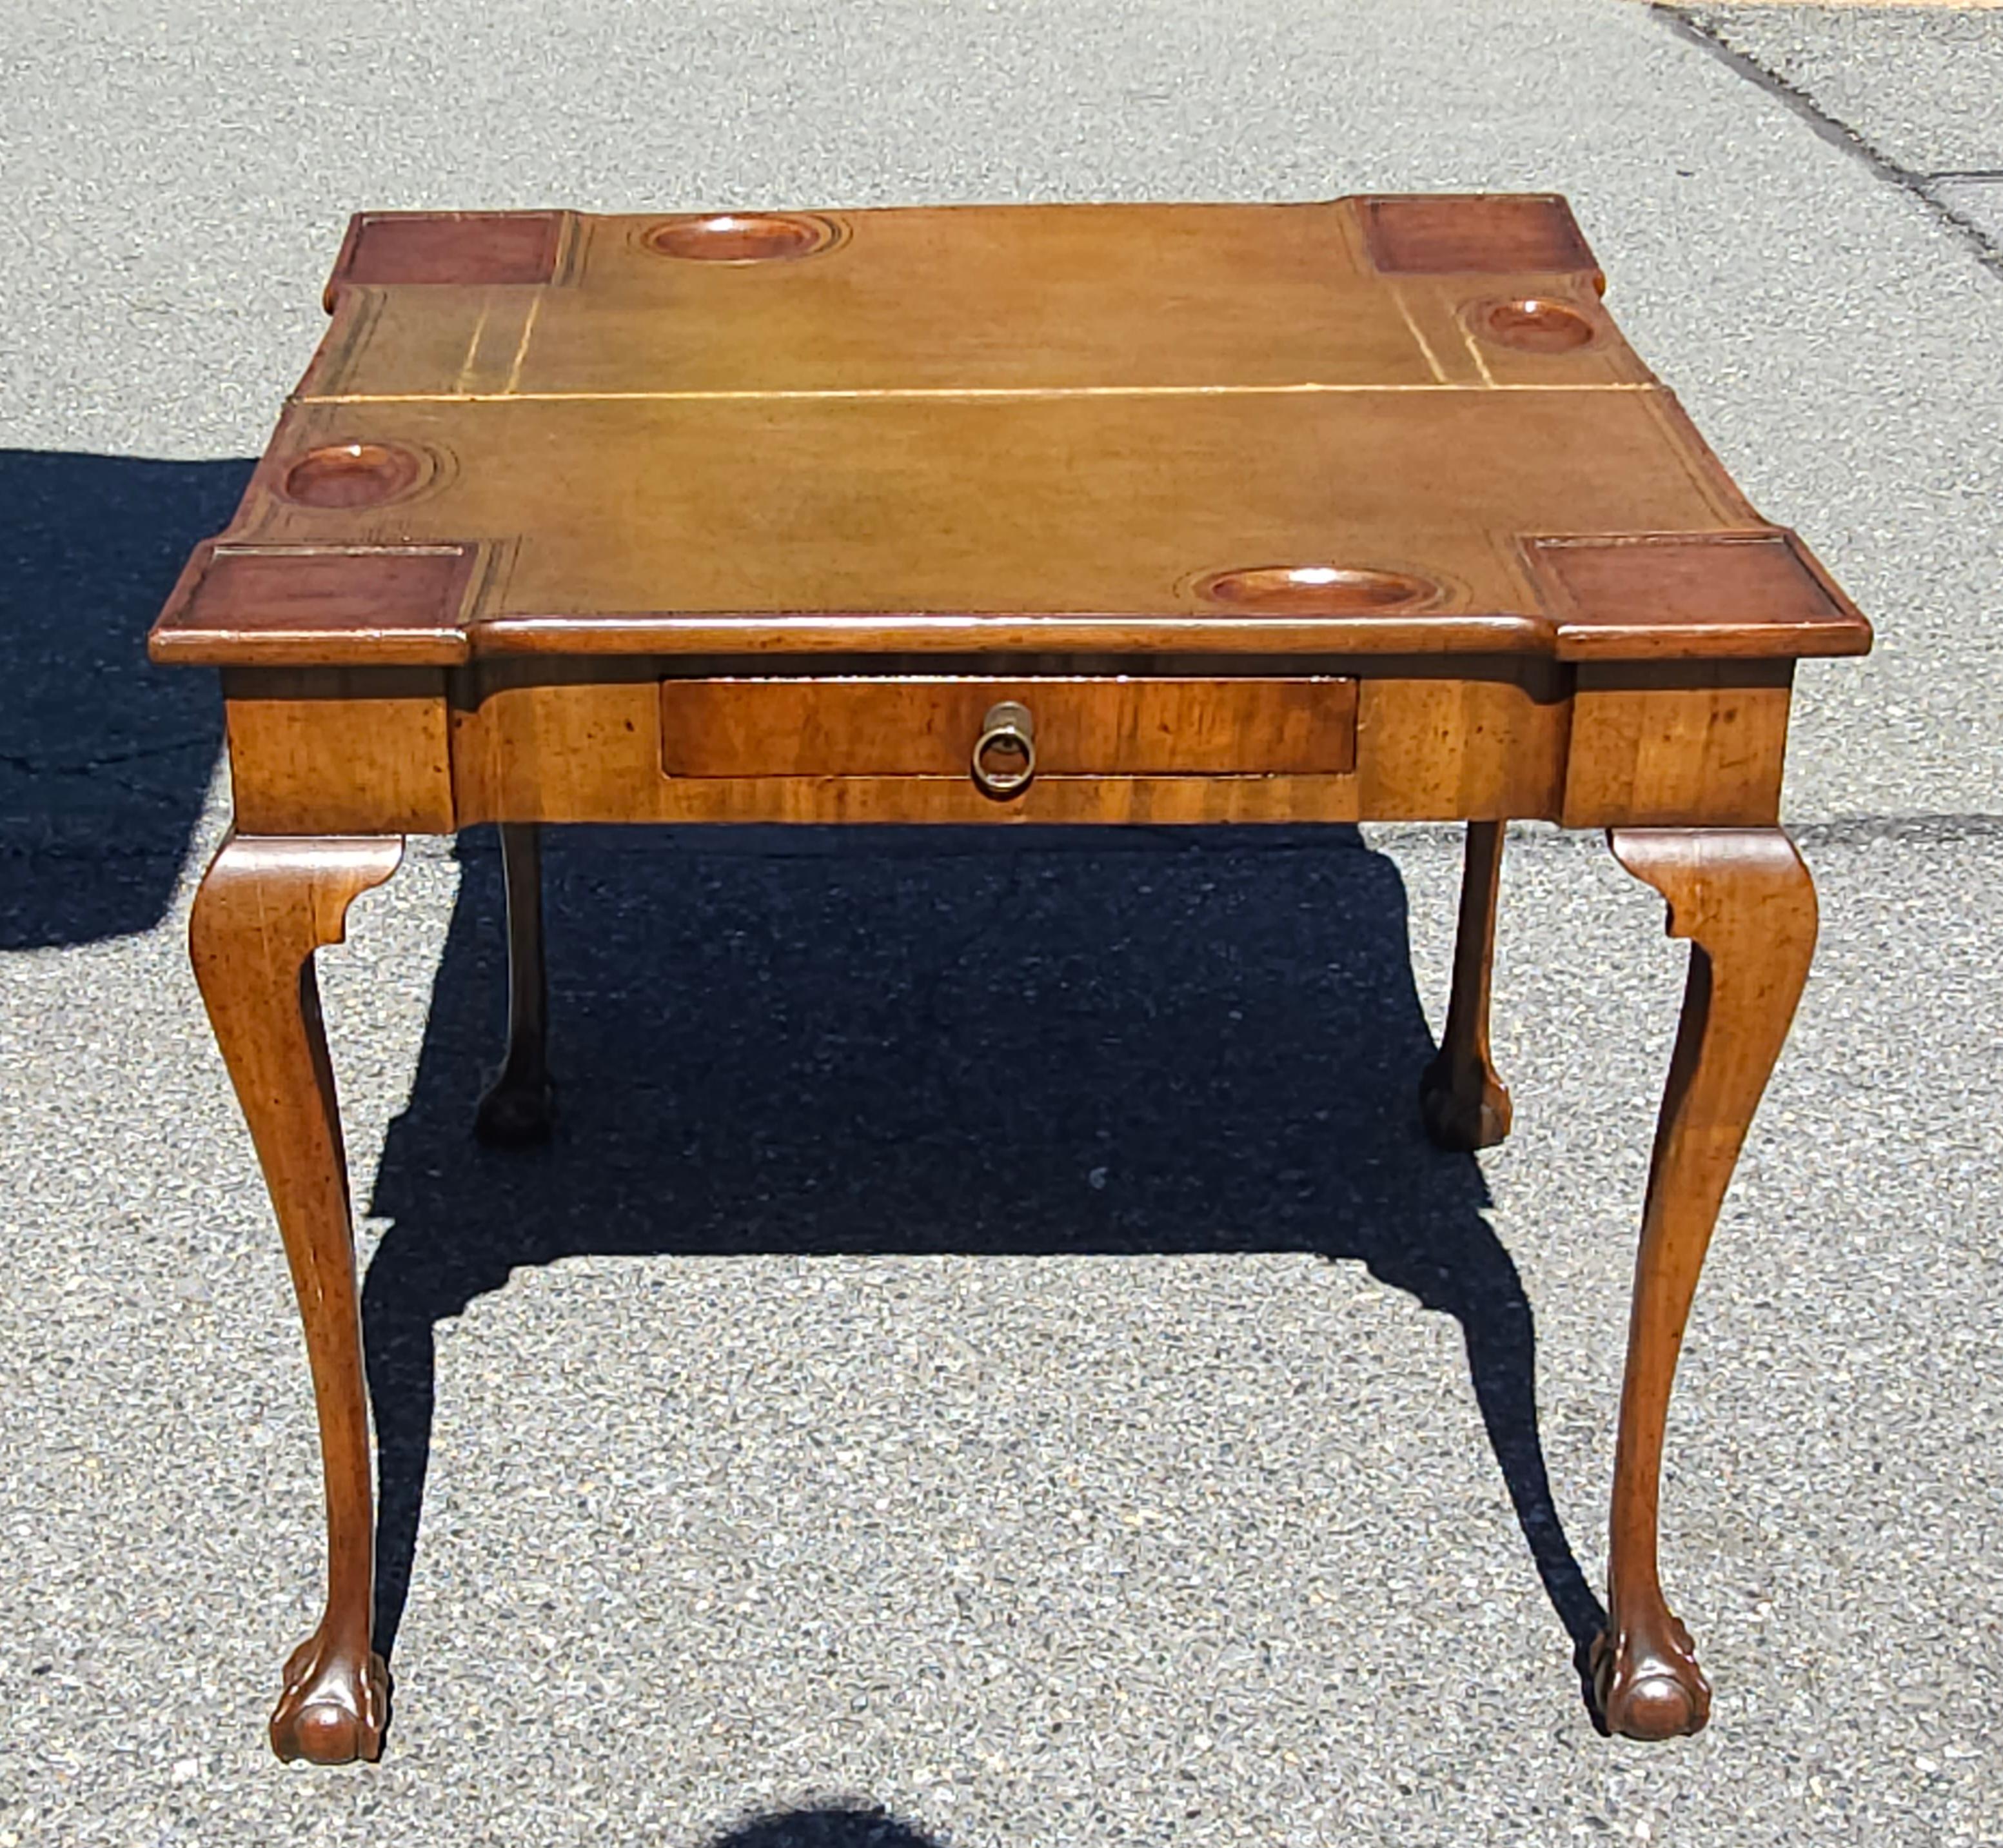 Ein Chippendale-Mahagoni aus dem 18. Jahrhundert und ein Fold-Top-Spieltisch aus getäfeltem Leder  / Konsolentisch mit Satinholzeinlage, Cabriole-Beine mit Abschluss in  Kugel- und Klauenfüße.
Messen Sie 33